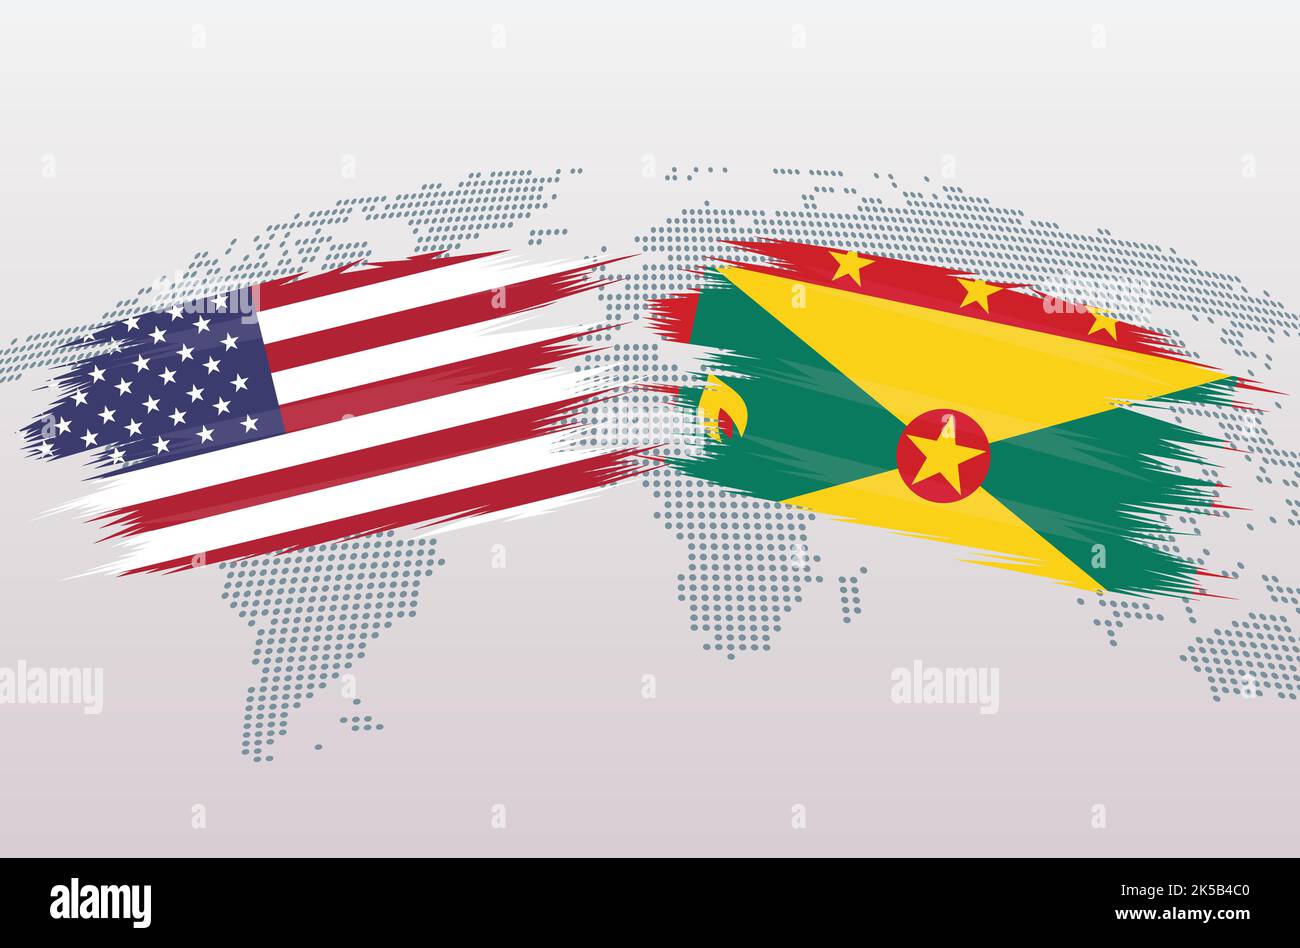 Drapeaux des États-Unis et de la Grenade. Les États-Unis d'Amérique contre les drapeaux de la Grenade, isolés sur fond gris de la carte du monde. Illustration vectorielle. Illustration de Vecteur